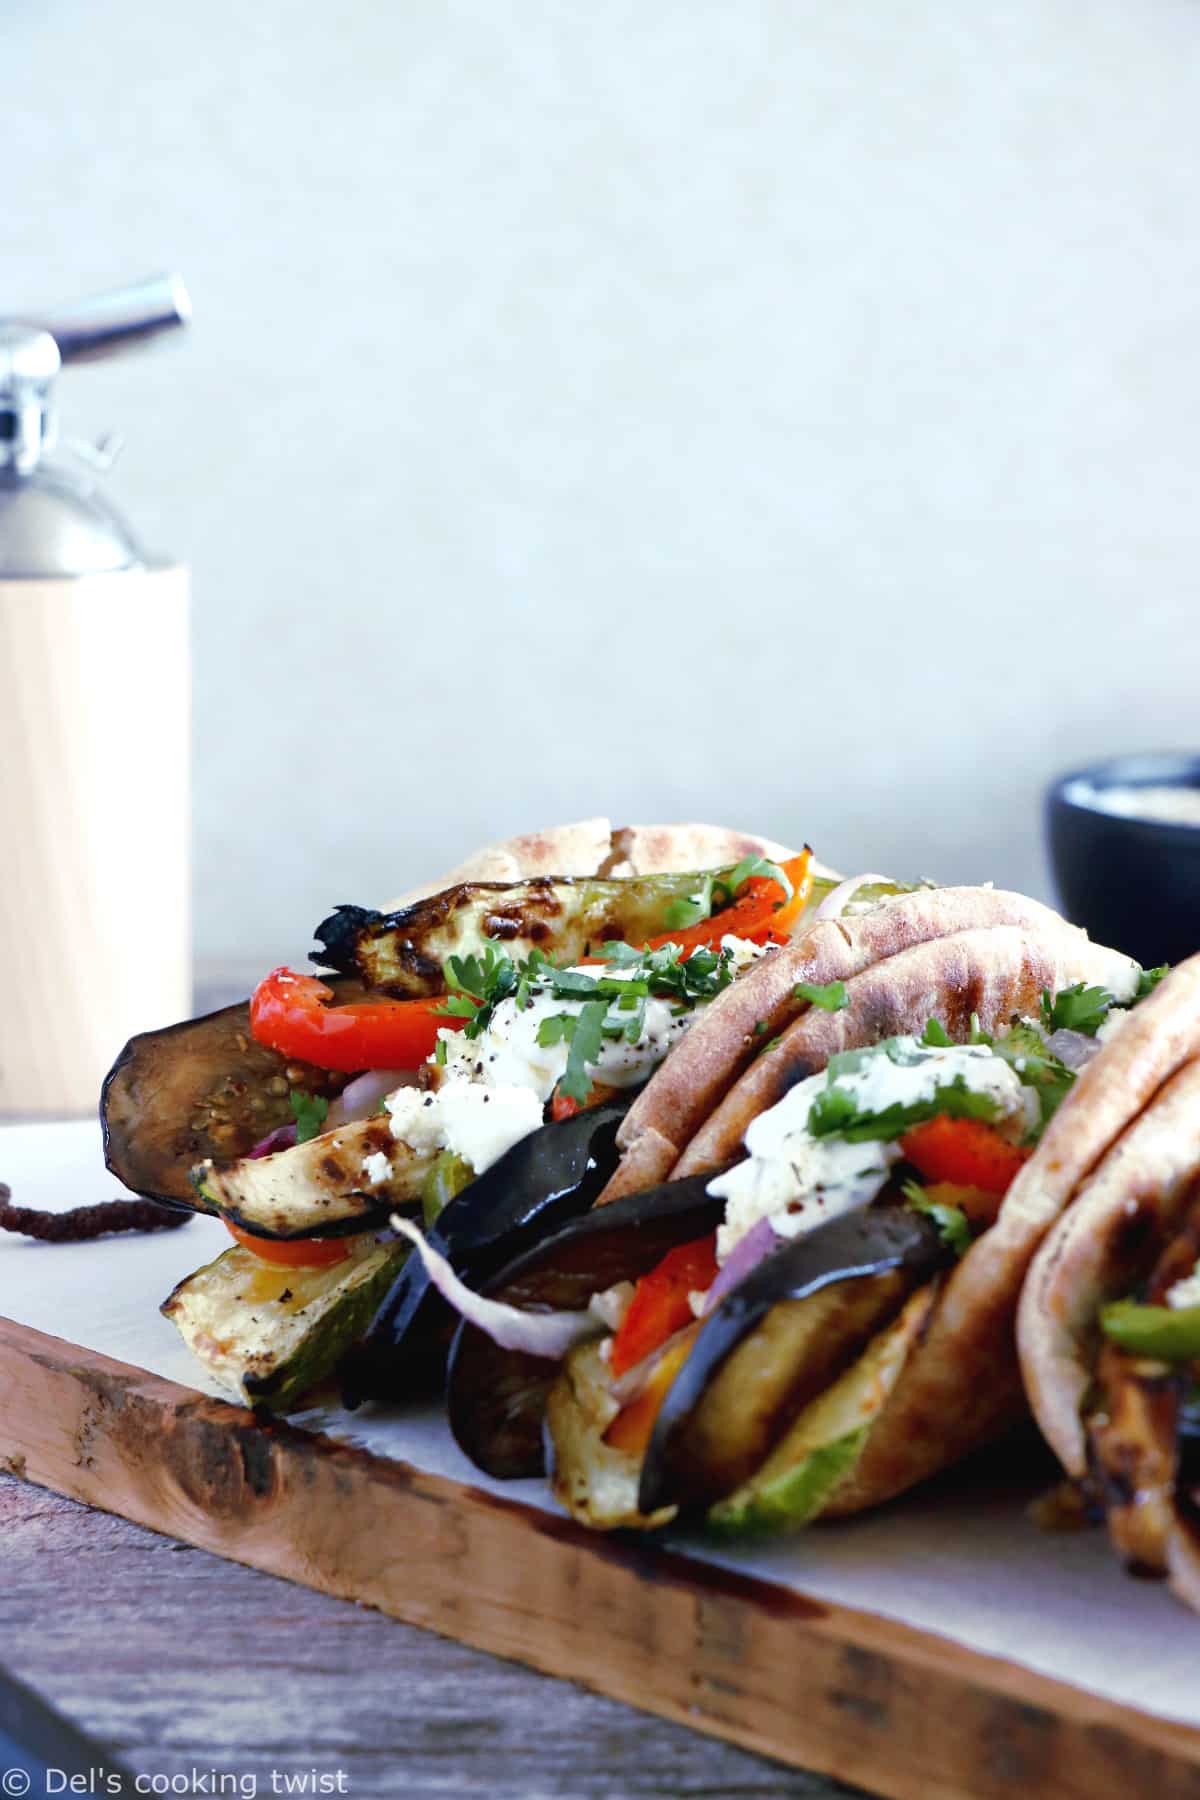 Le soleil s'invite au menu avec ces gyros aux légumes grillés et dip yaourt-feta, une version végétarienne du fameux sandwich grec réalisé à base de pain pita.